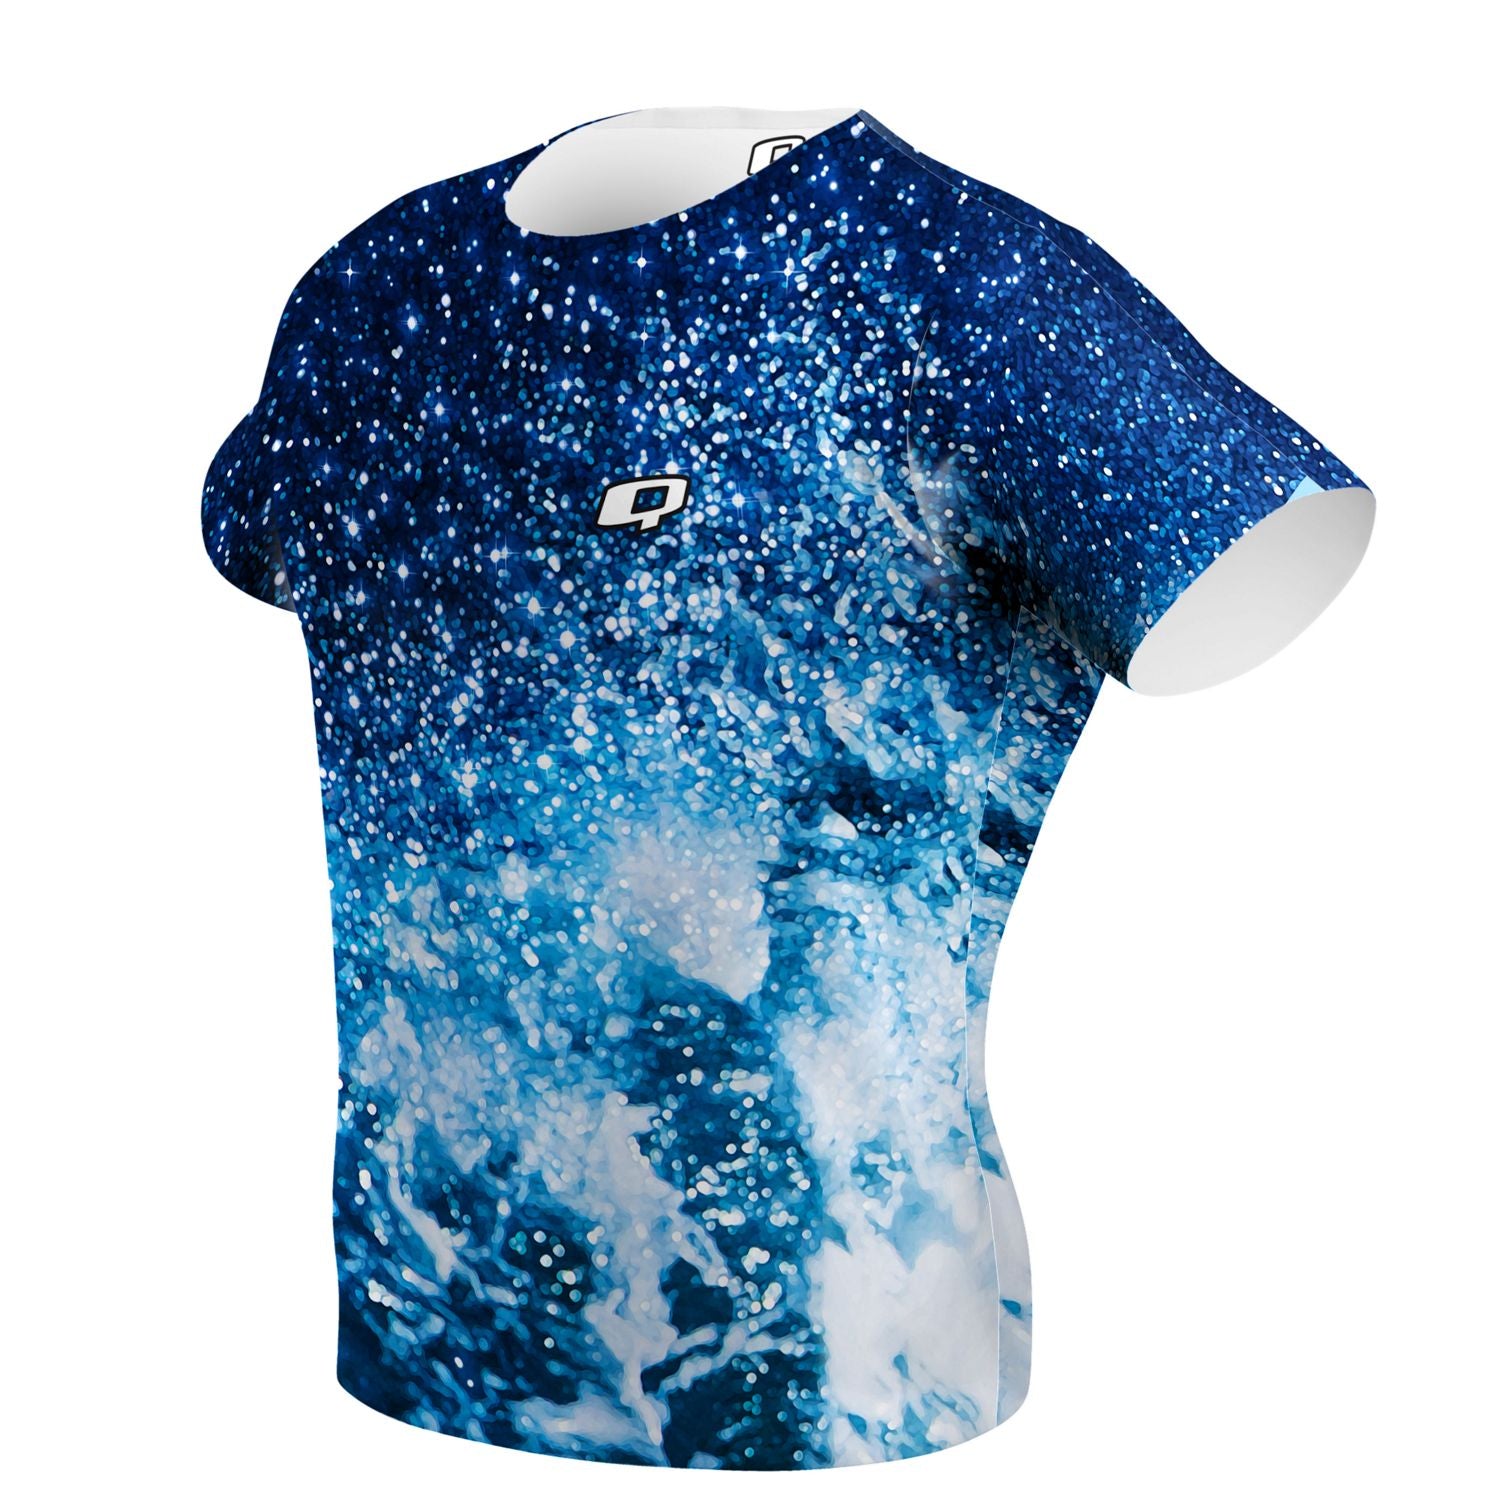 Cosmic Waves Performance Shirt - Q Swimwear